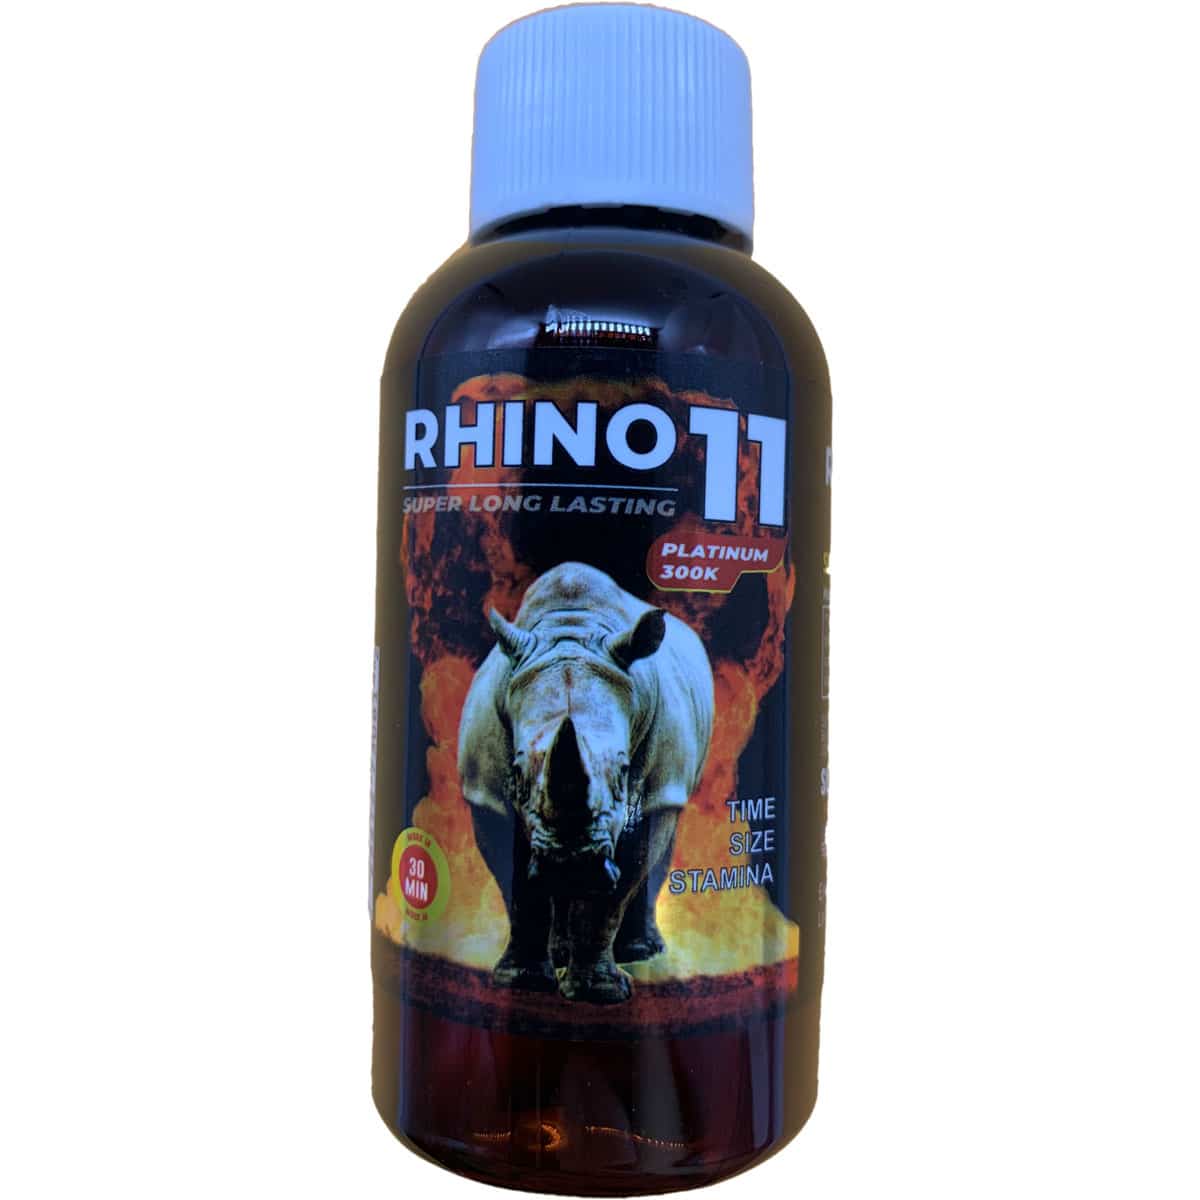 rhino 7 free trial